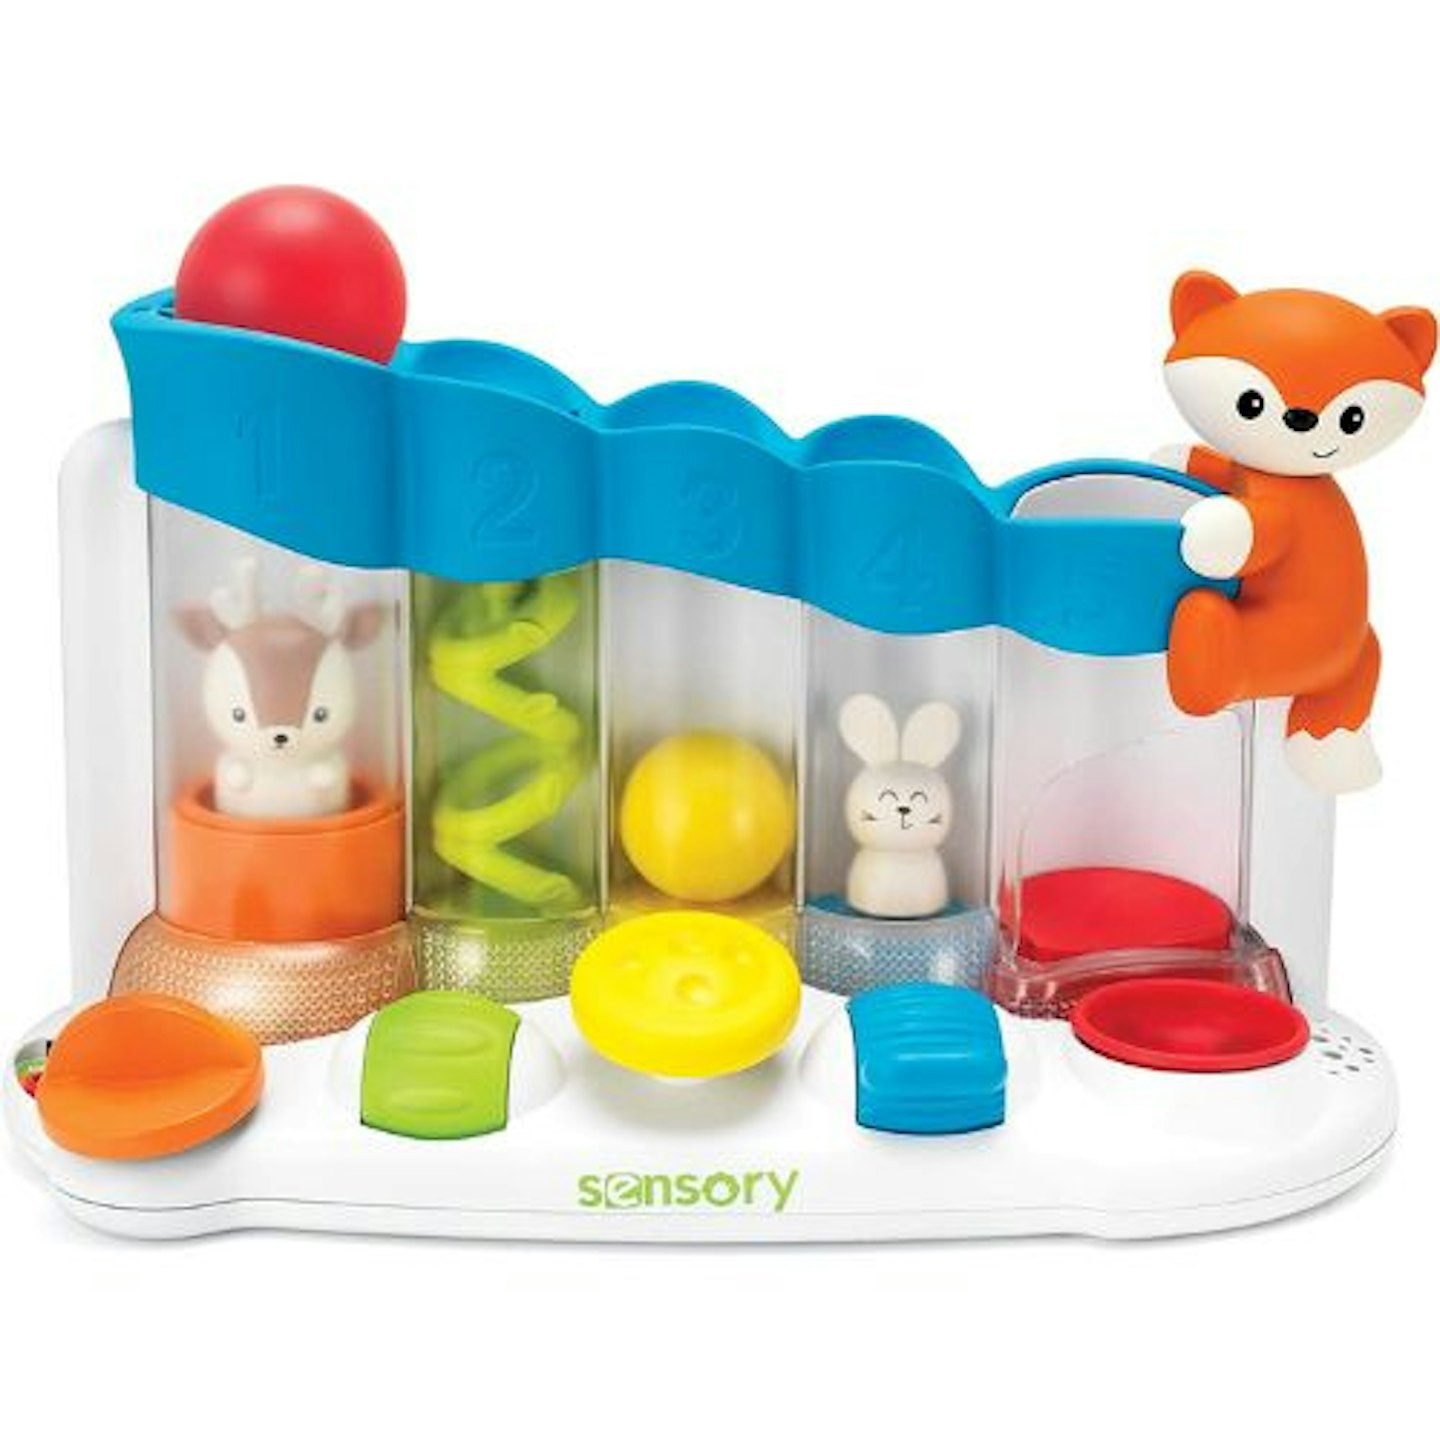 sensory-ball-drop-piano-infantino-toy